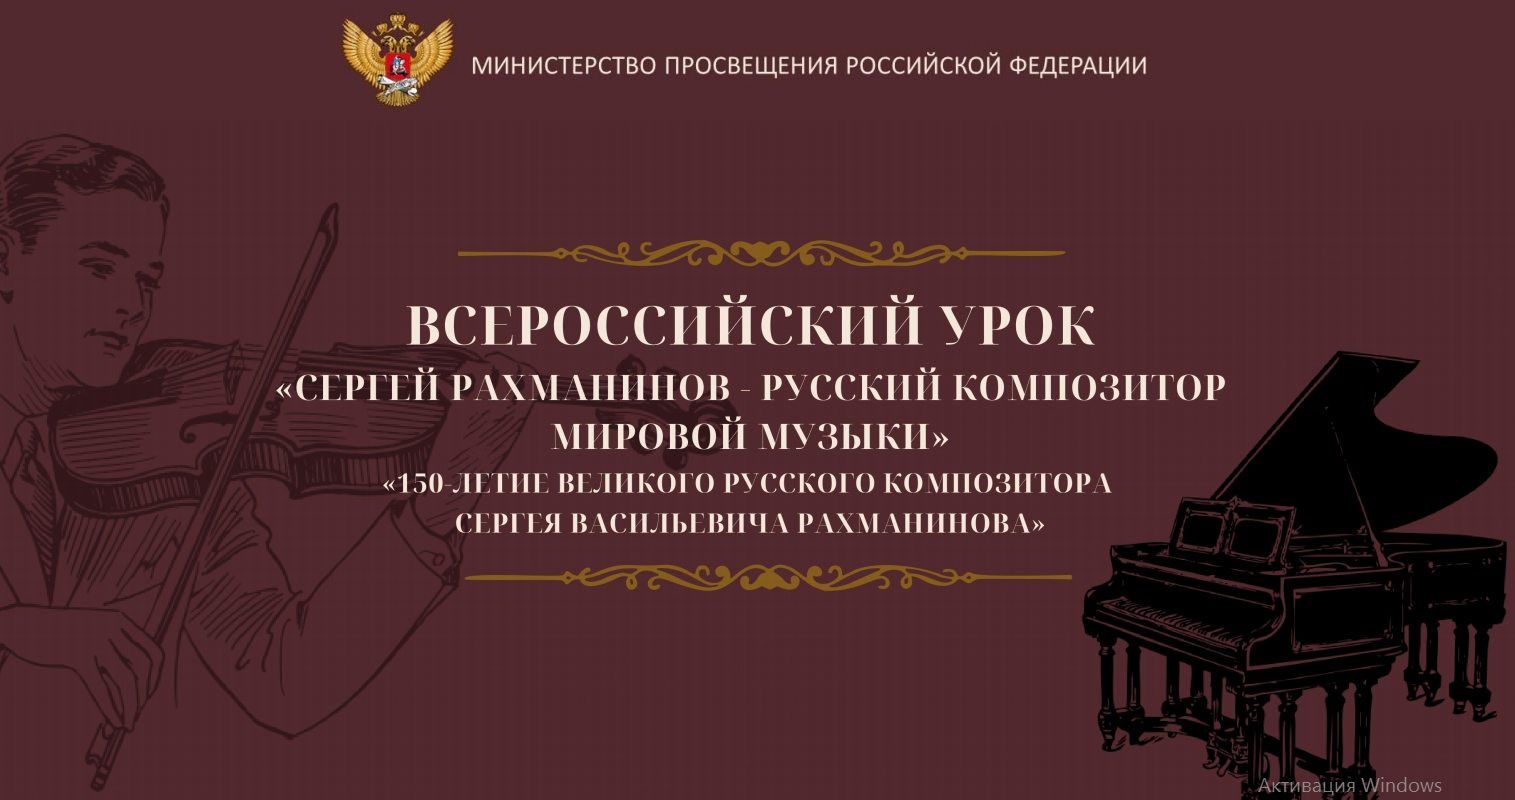  Всероссийский урок музыки.